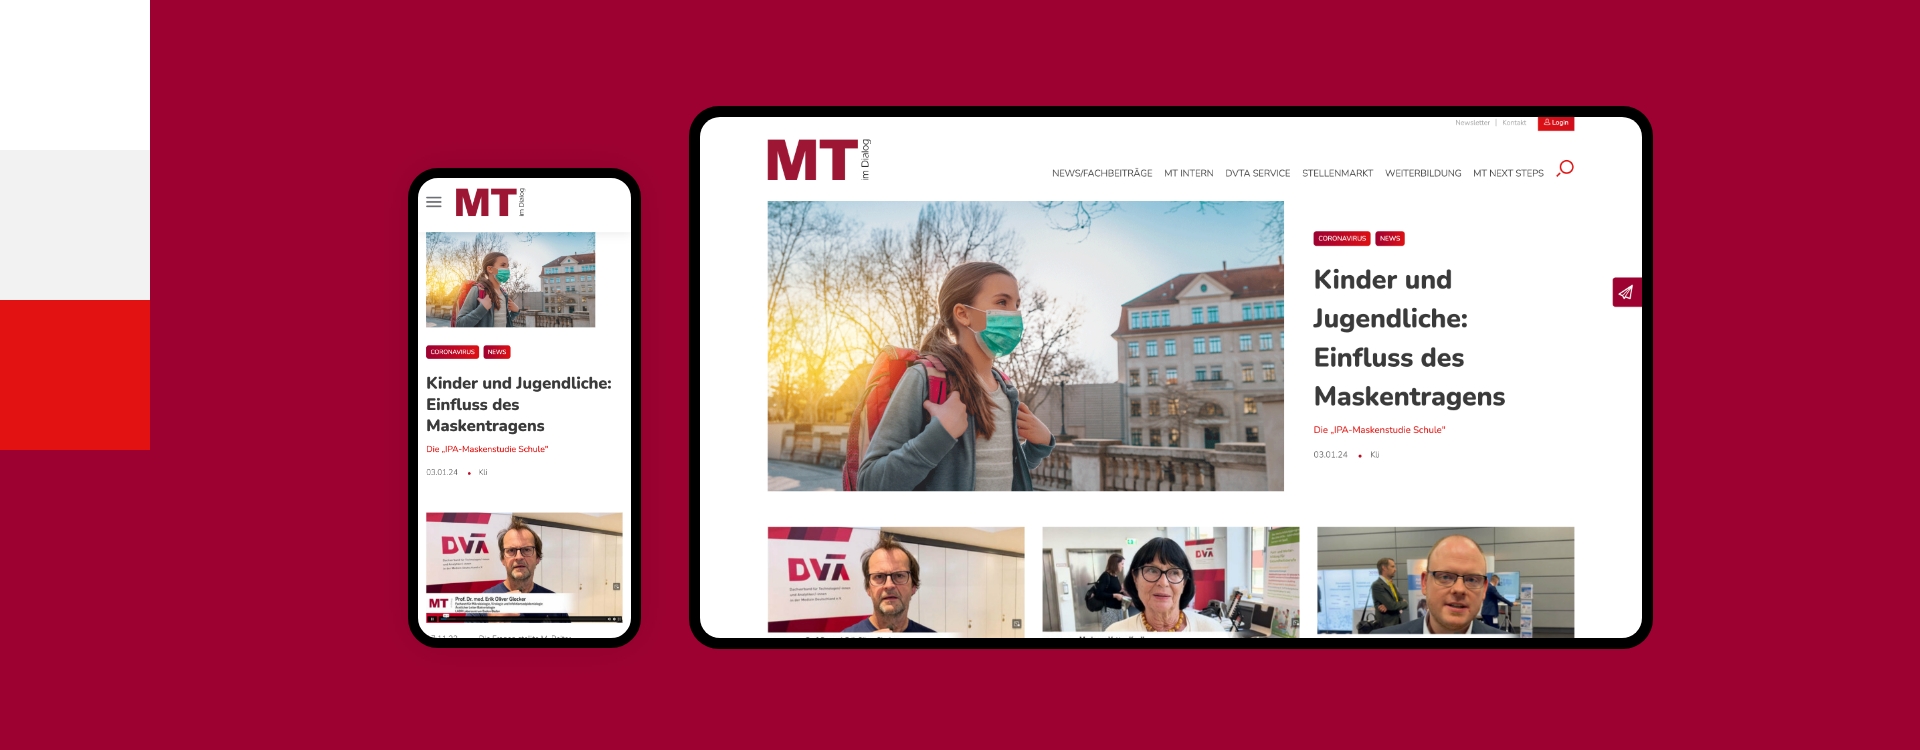 Screenshot einer Desktop- und Smartphoneansicht der Webseite MT im Dialog umgeben von den Farben des Corporate Design